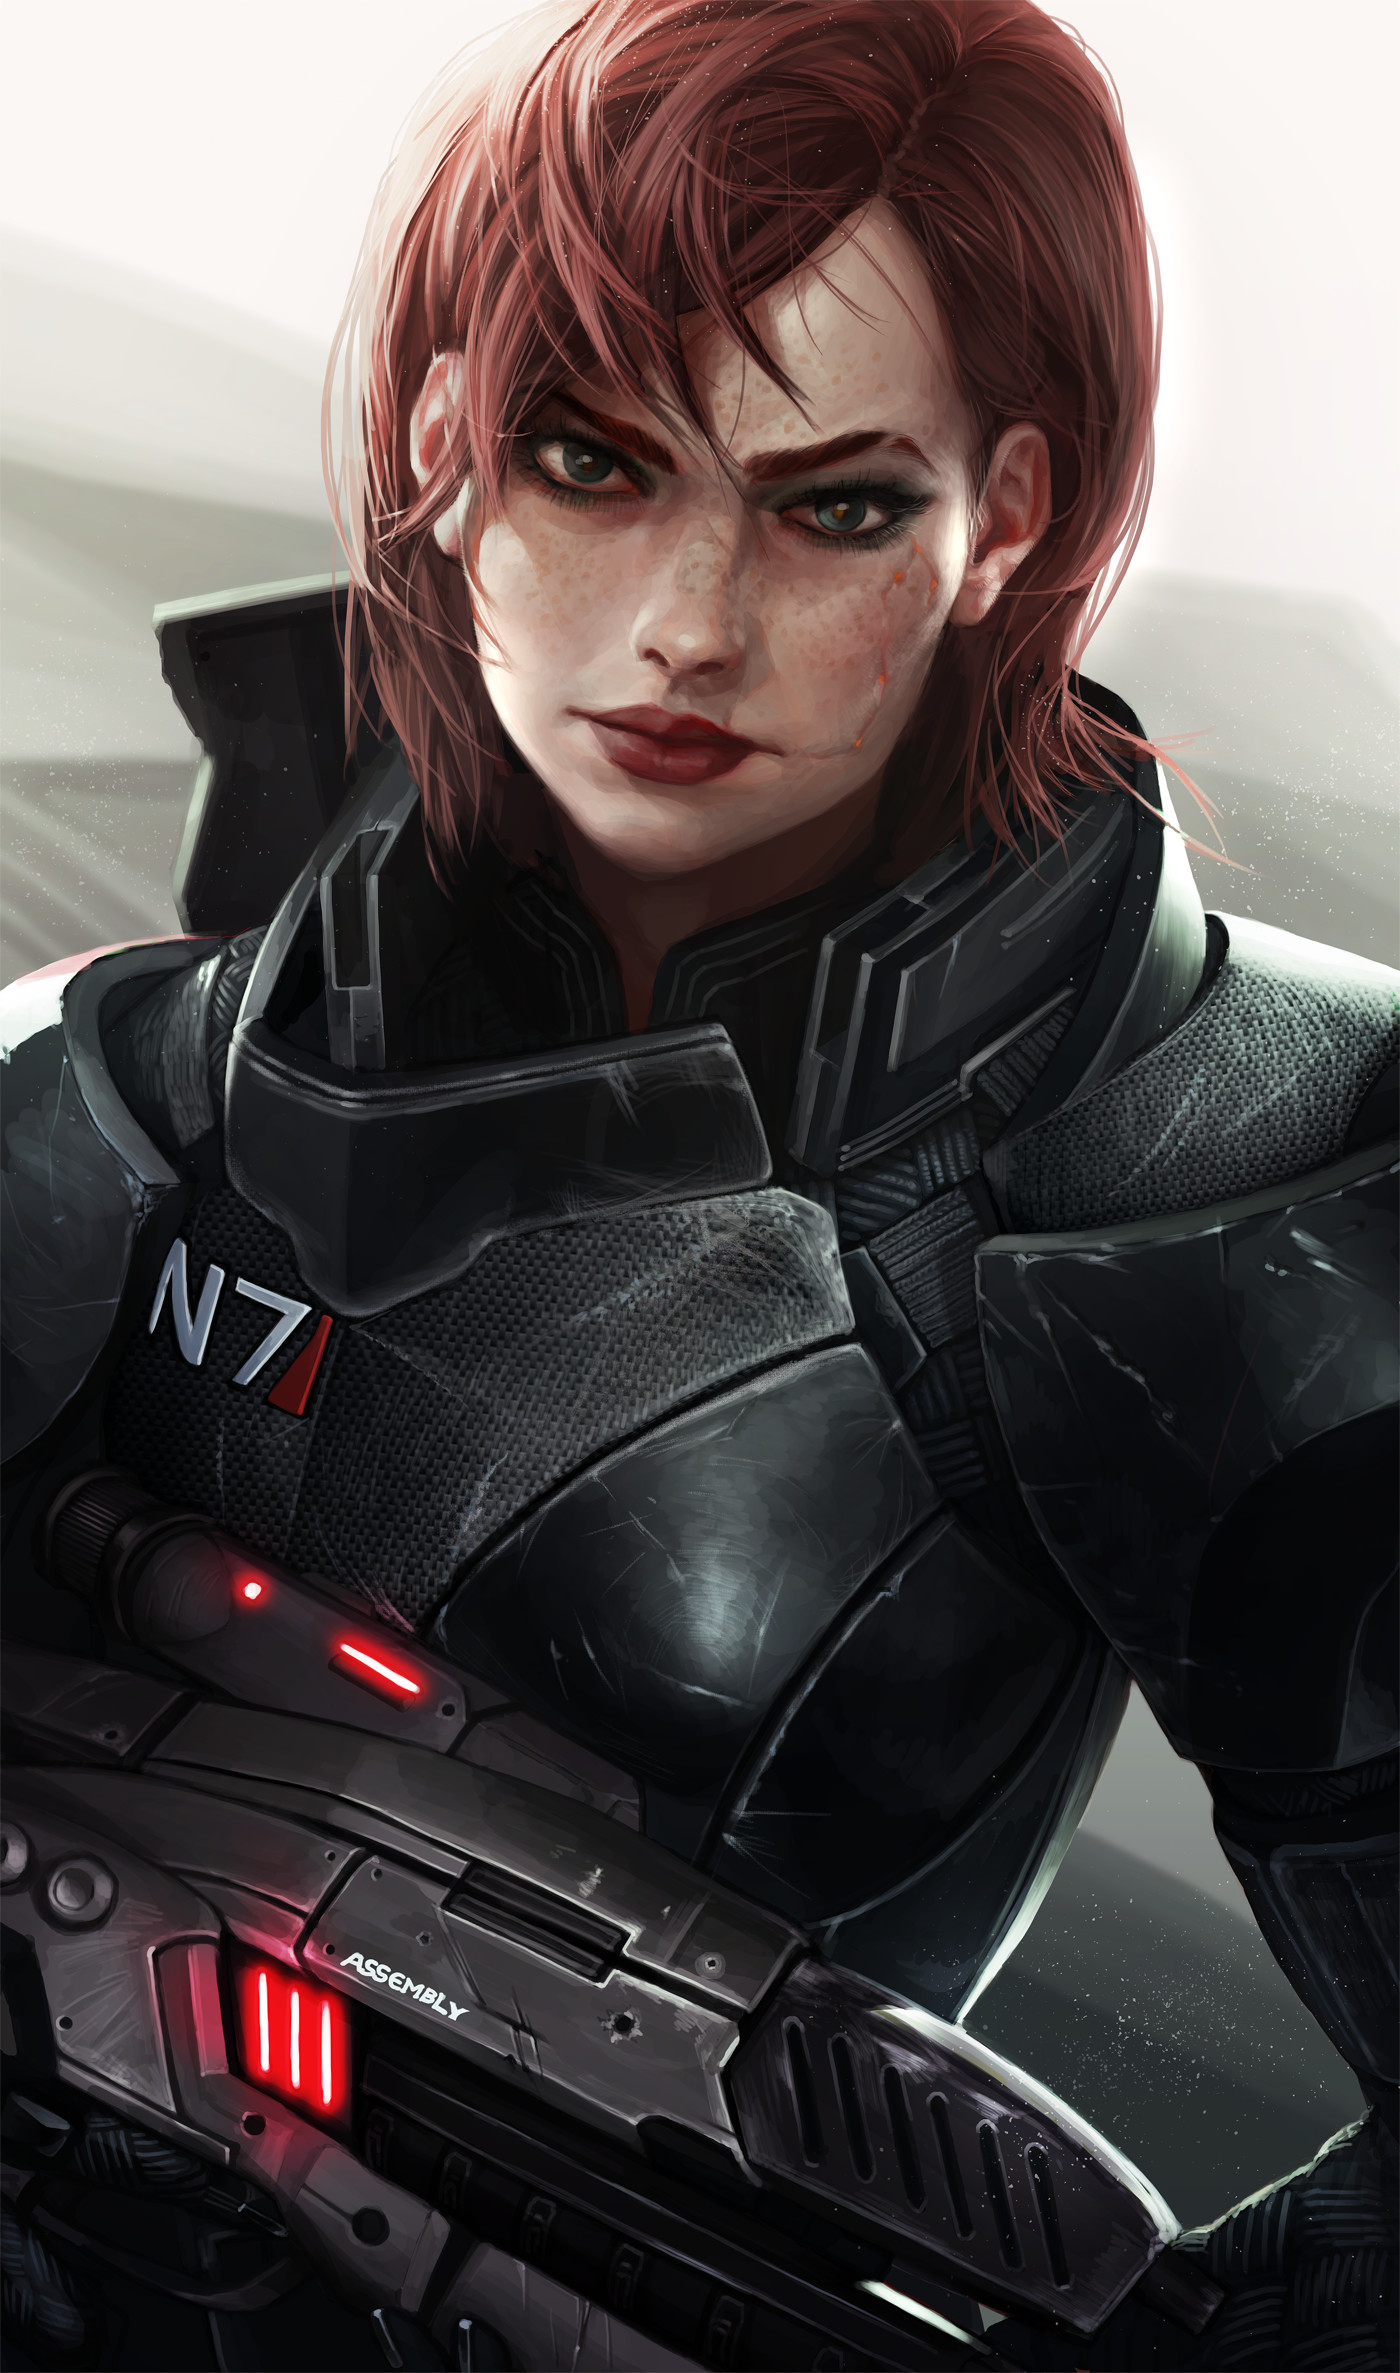 Warrior Futuristic Gun Mass Effect Girls With Guns Science Fiction